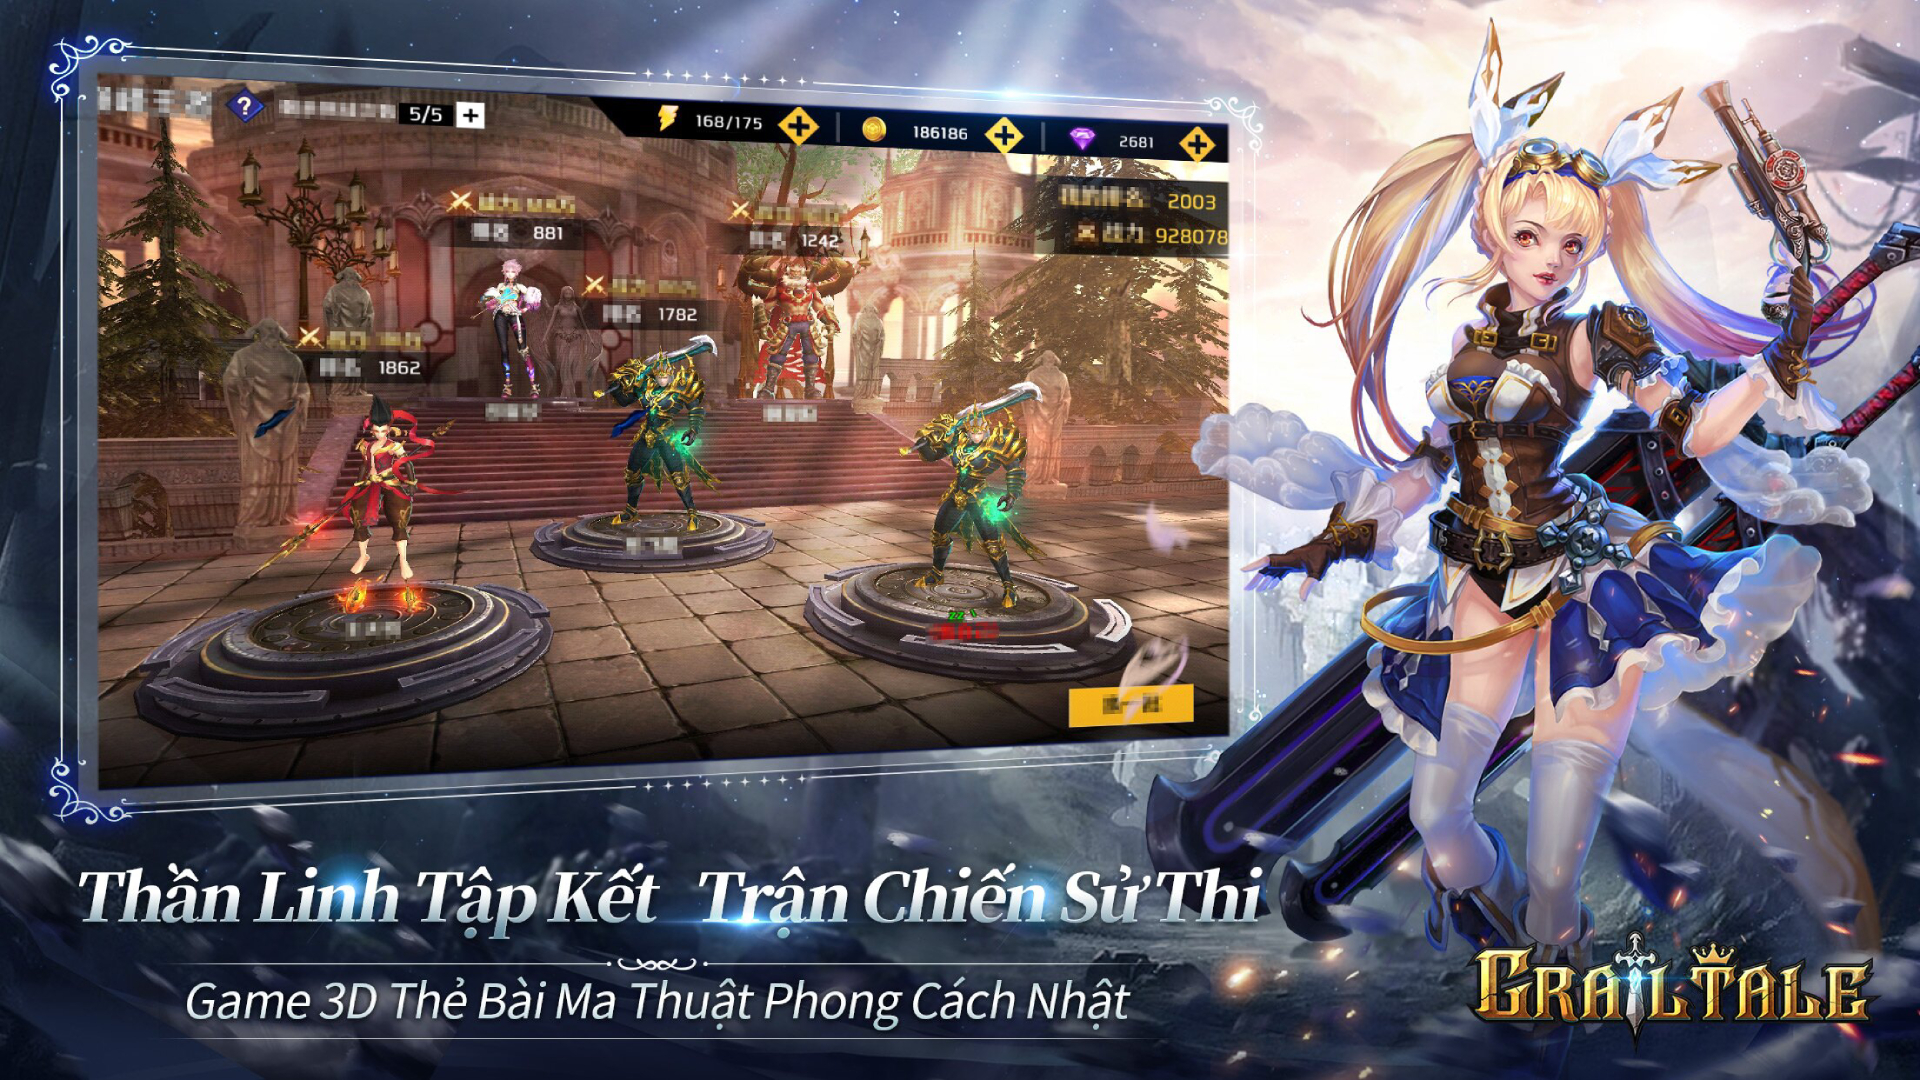 Grail Tale - Game thẻ bài ma thuật 3D cực đẹp sắp ra mắt game thủ Việt - Ảnh 3.